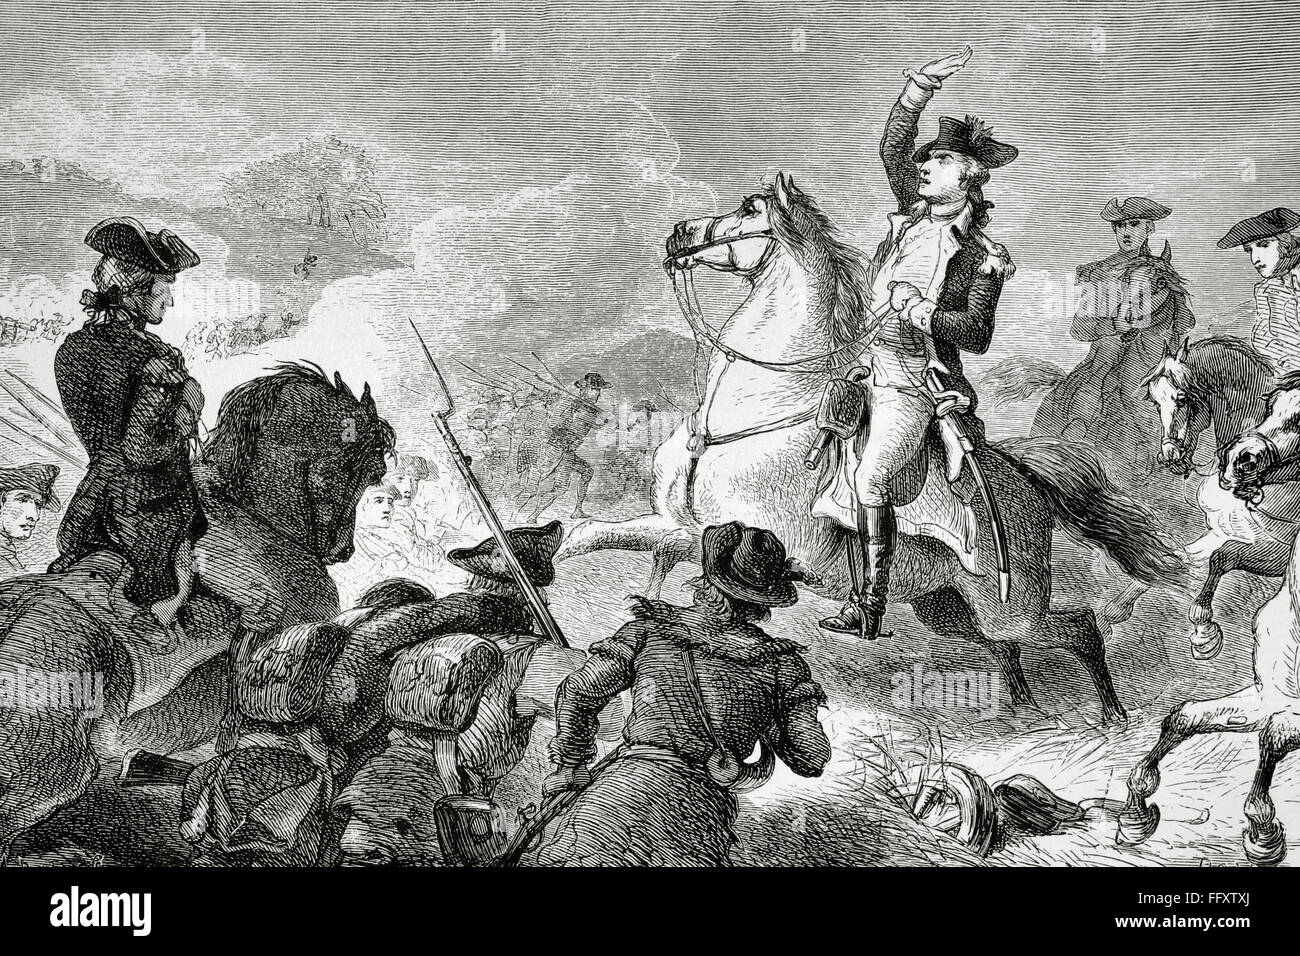 La guerra rivoluzionaria americana (1775-1783). George Washington (1732-1799), il comandante in capo dell'esercito continentale, comandare la truppa nella battaglia di Monmouth (1778). Incisione. Xix secolo. Foto Stock